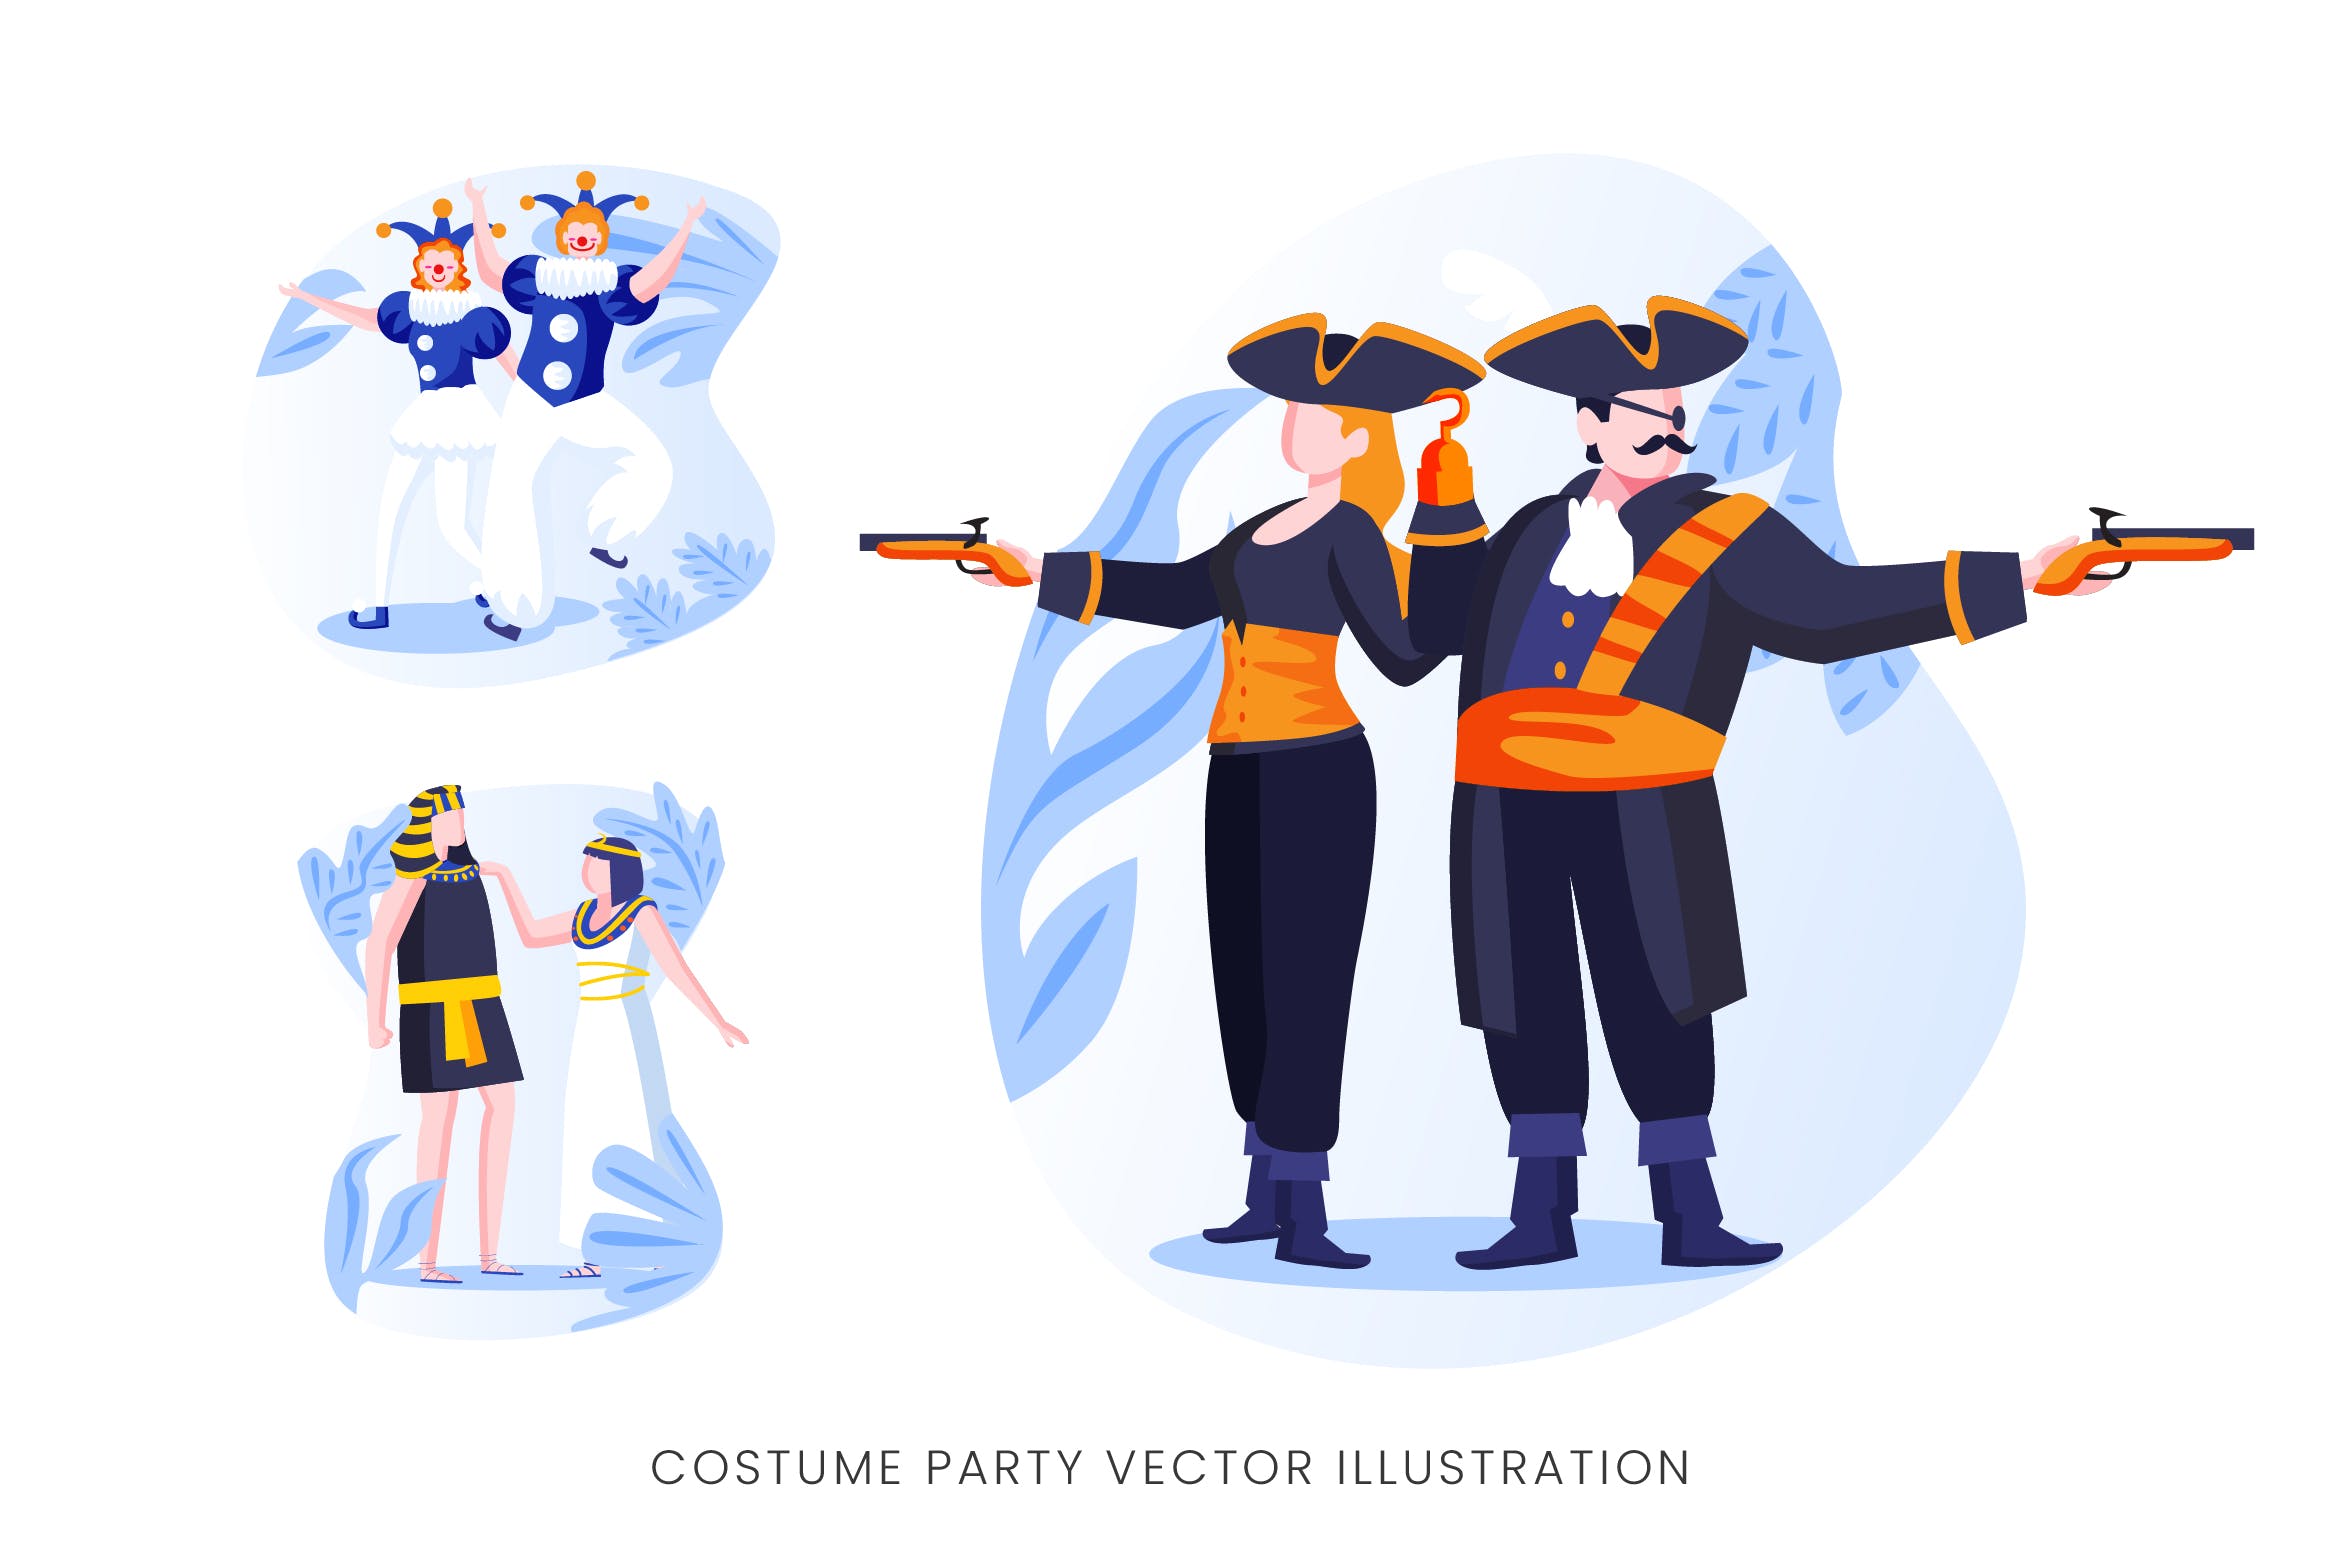 服装Cosplay派对人物形象矢量手绘素材中国精选设计素材 Costume Party Vector Character Set插图